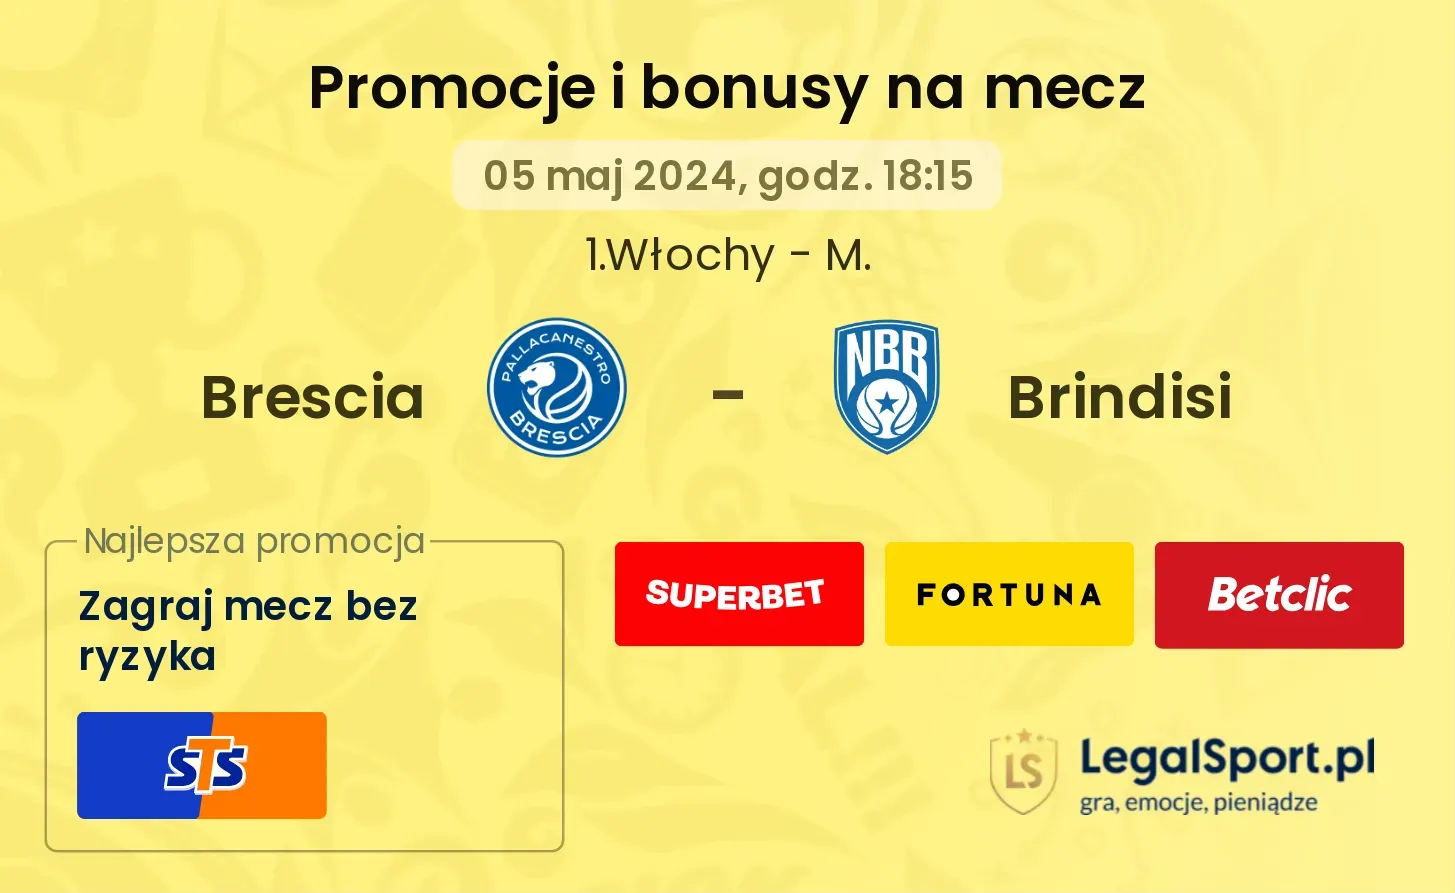 Brescia - Brindisi promocje bonusy na mecz